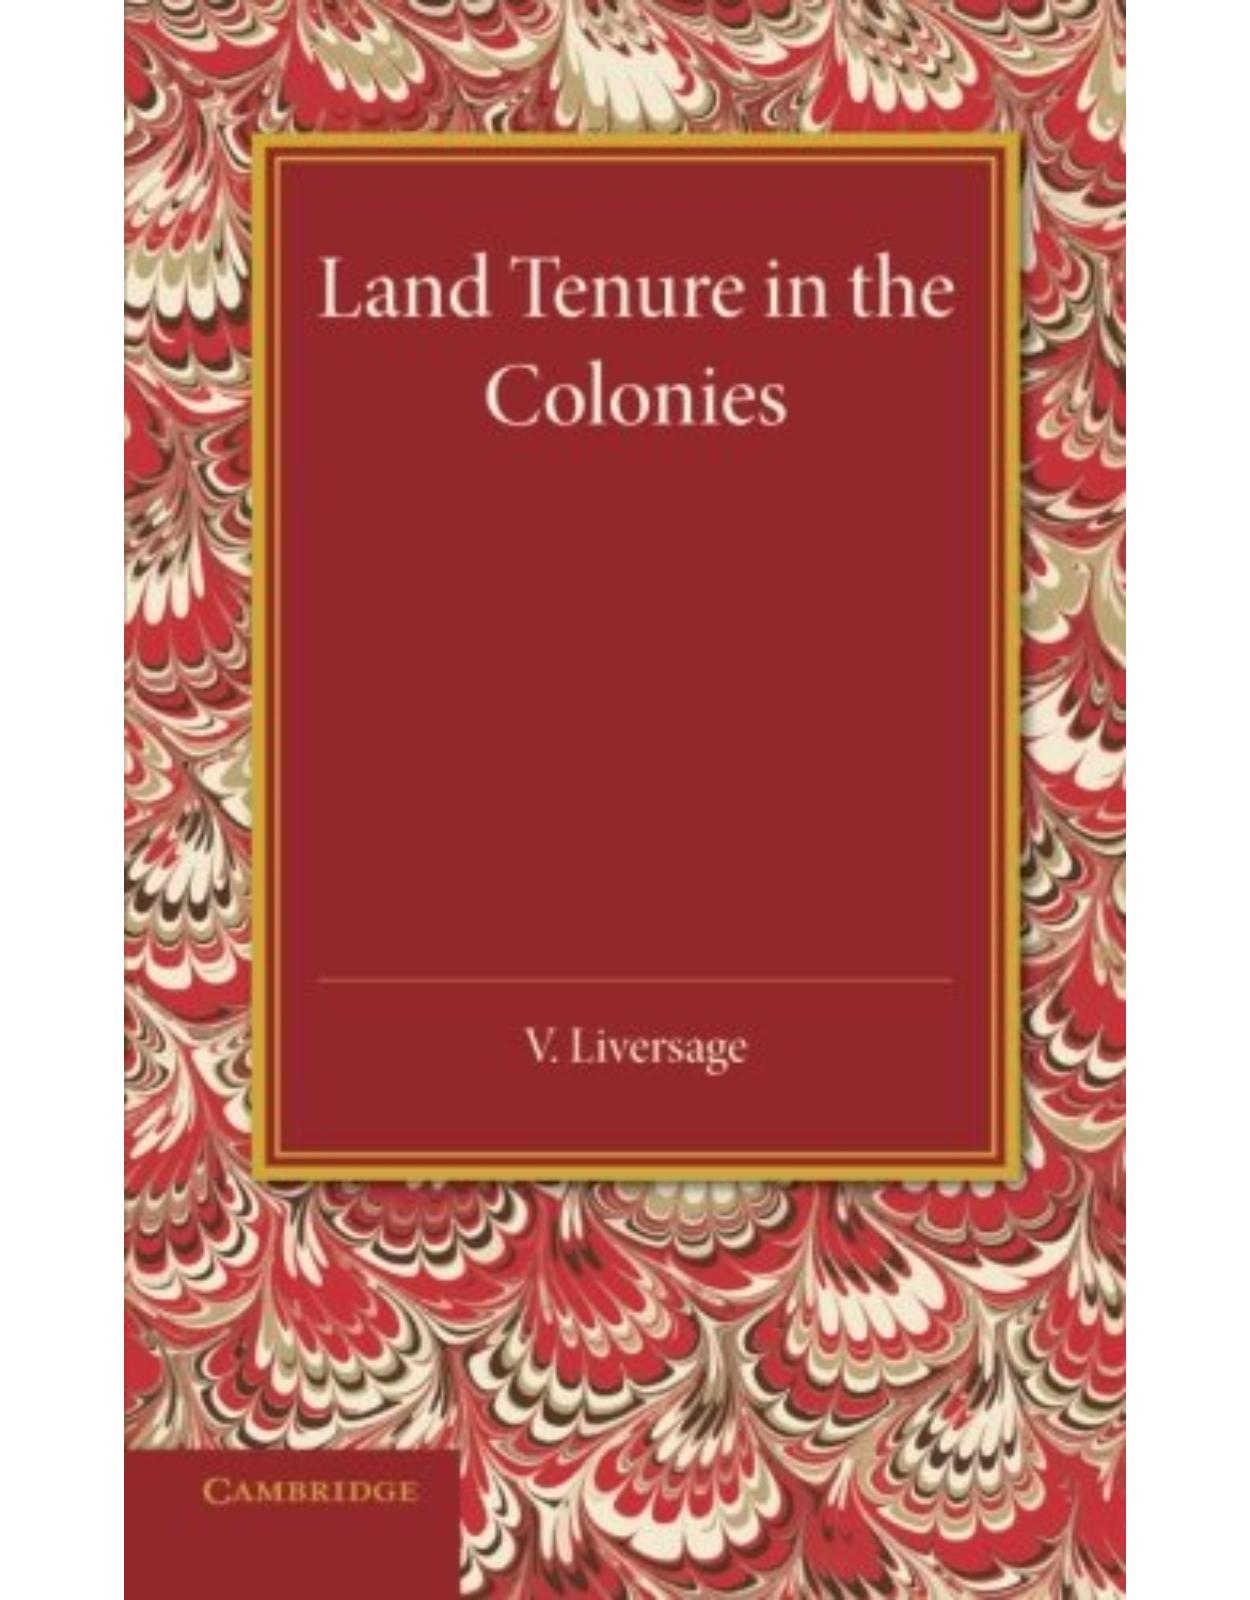 Land Tenure in the Colonies